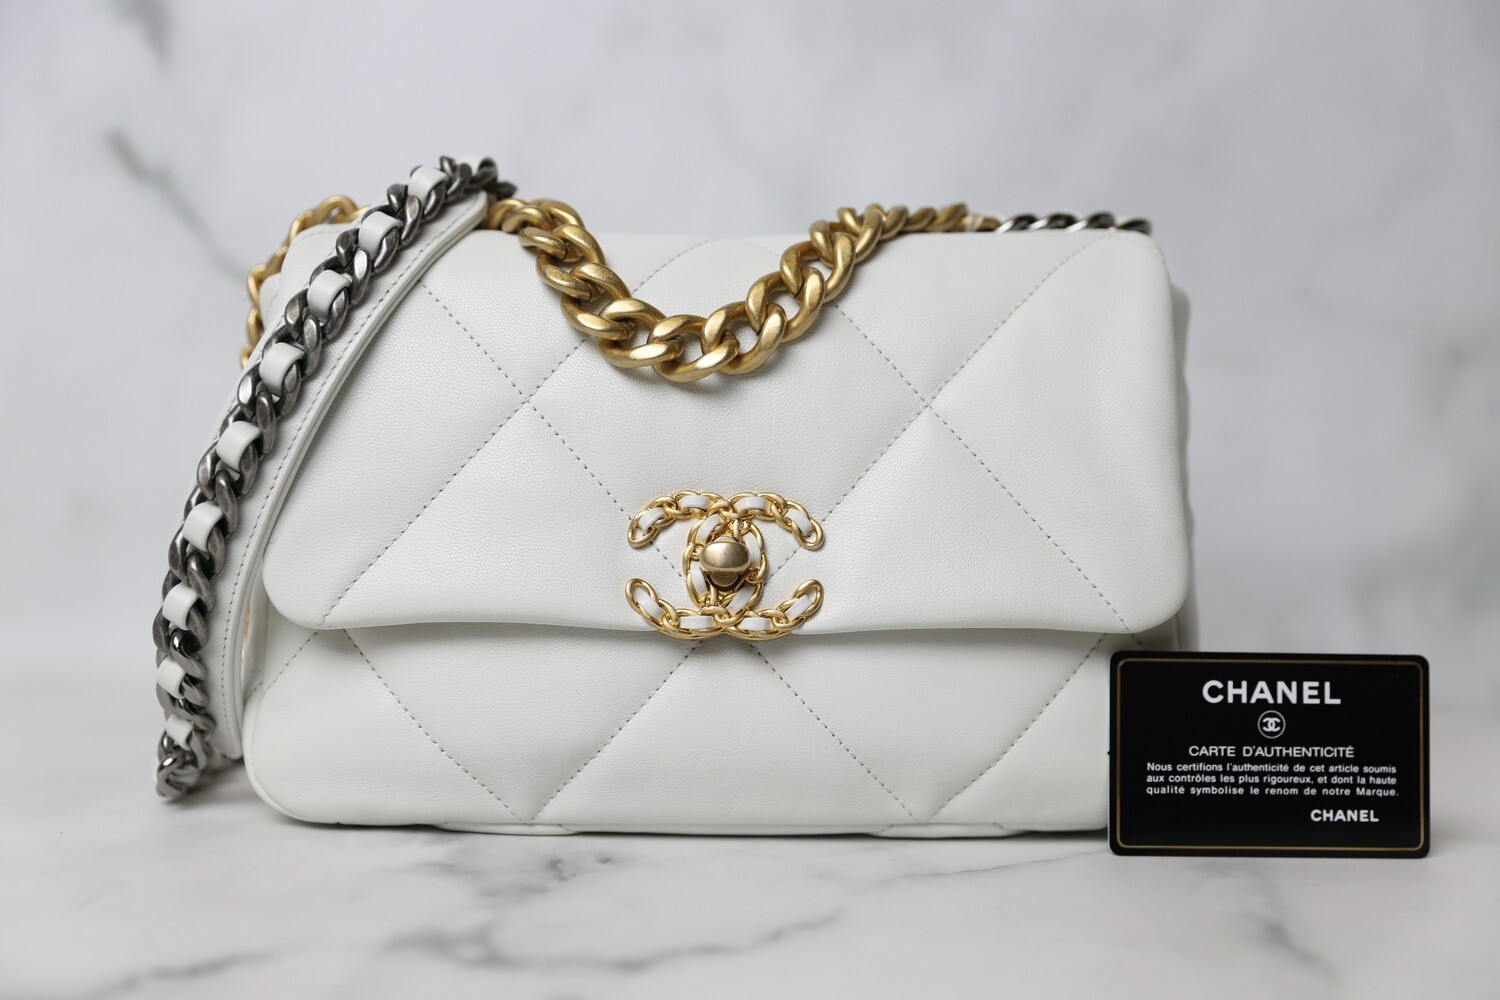 Chanel 19 Classic Small, White Goatskin, New in Box - Julia Rose Boston